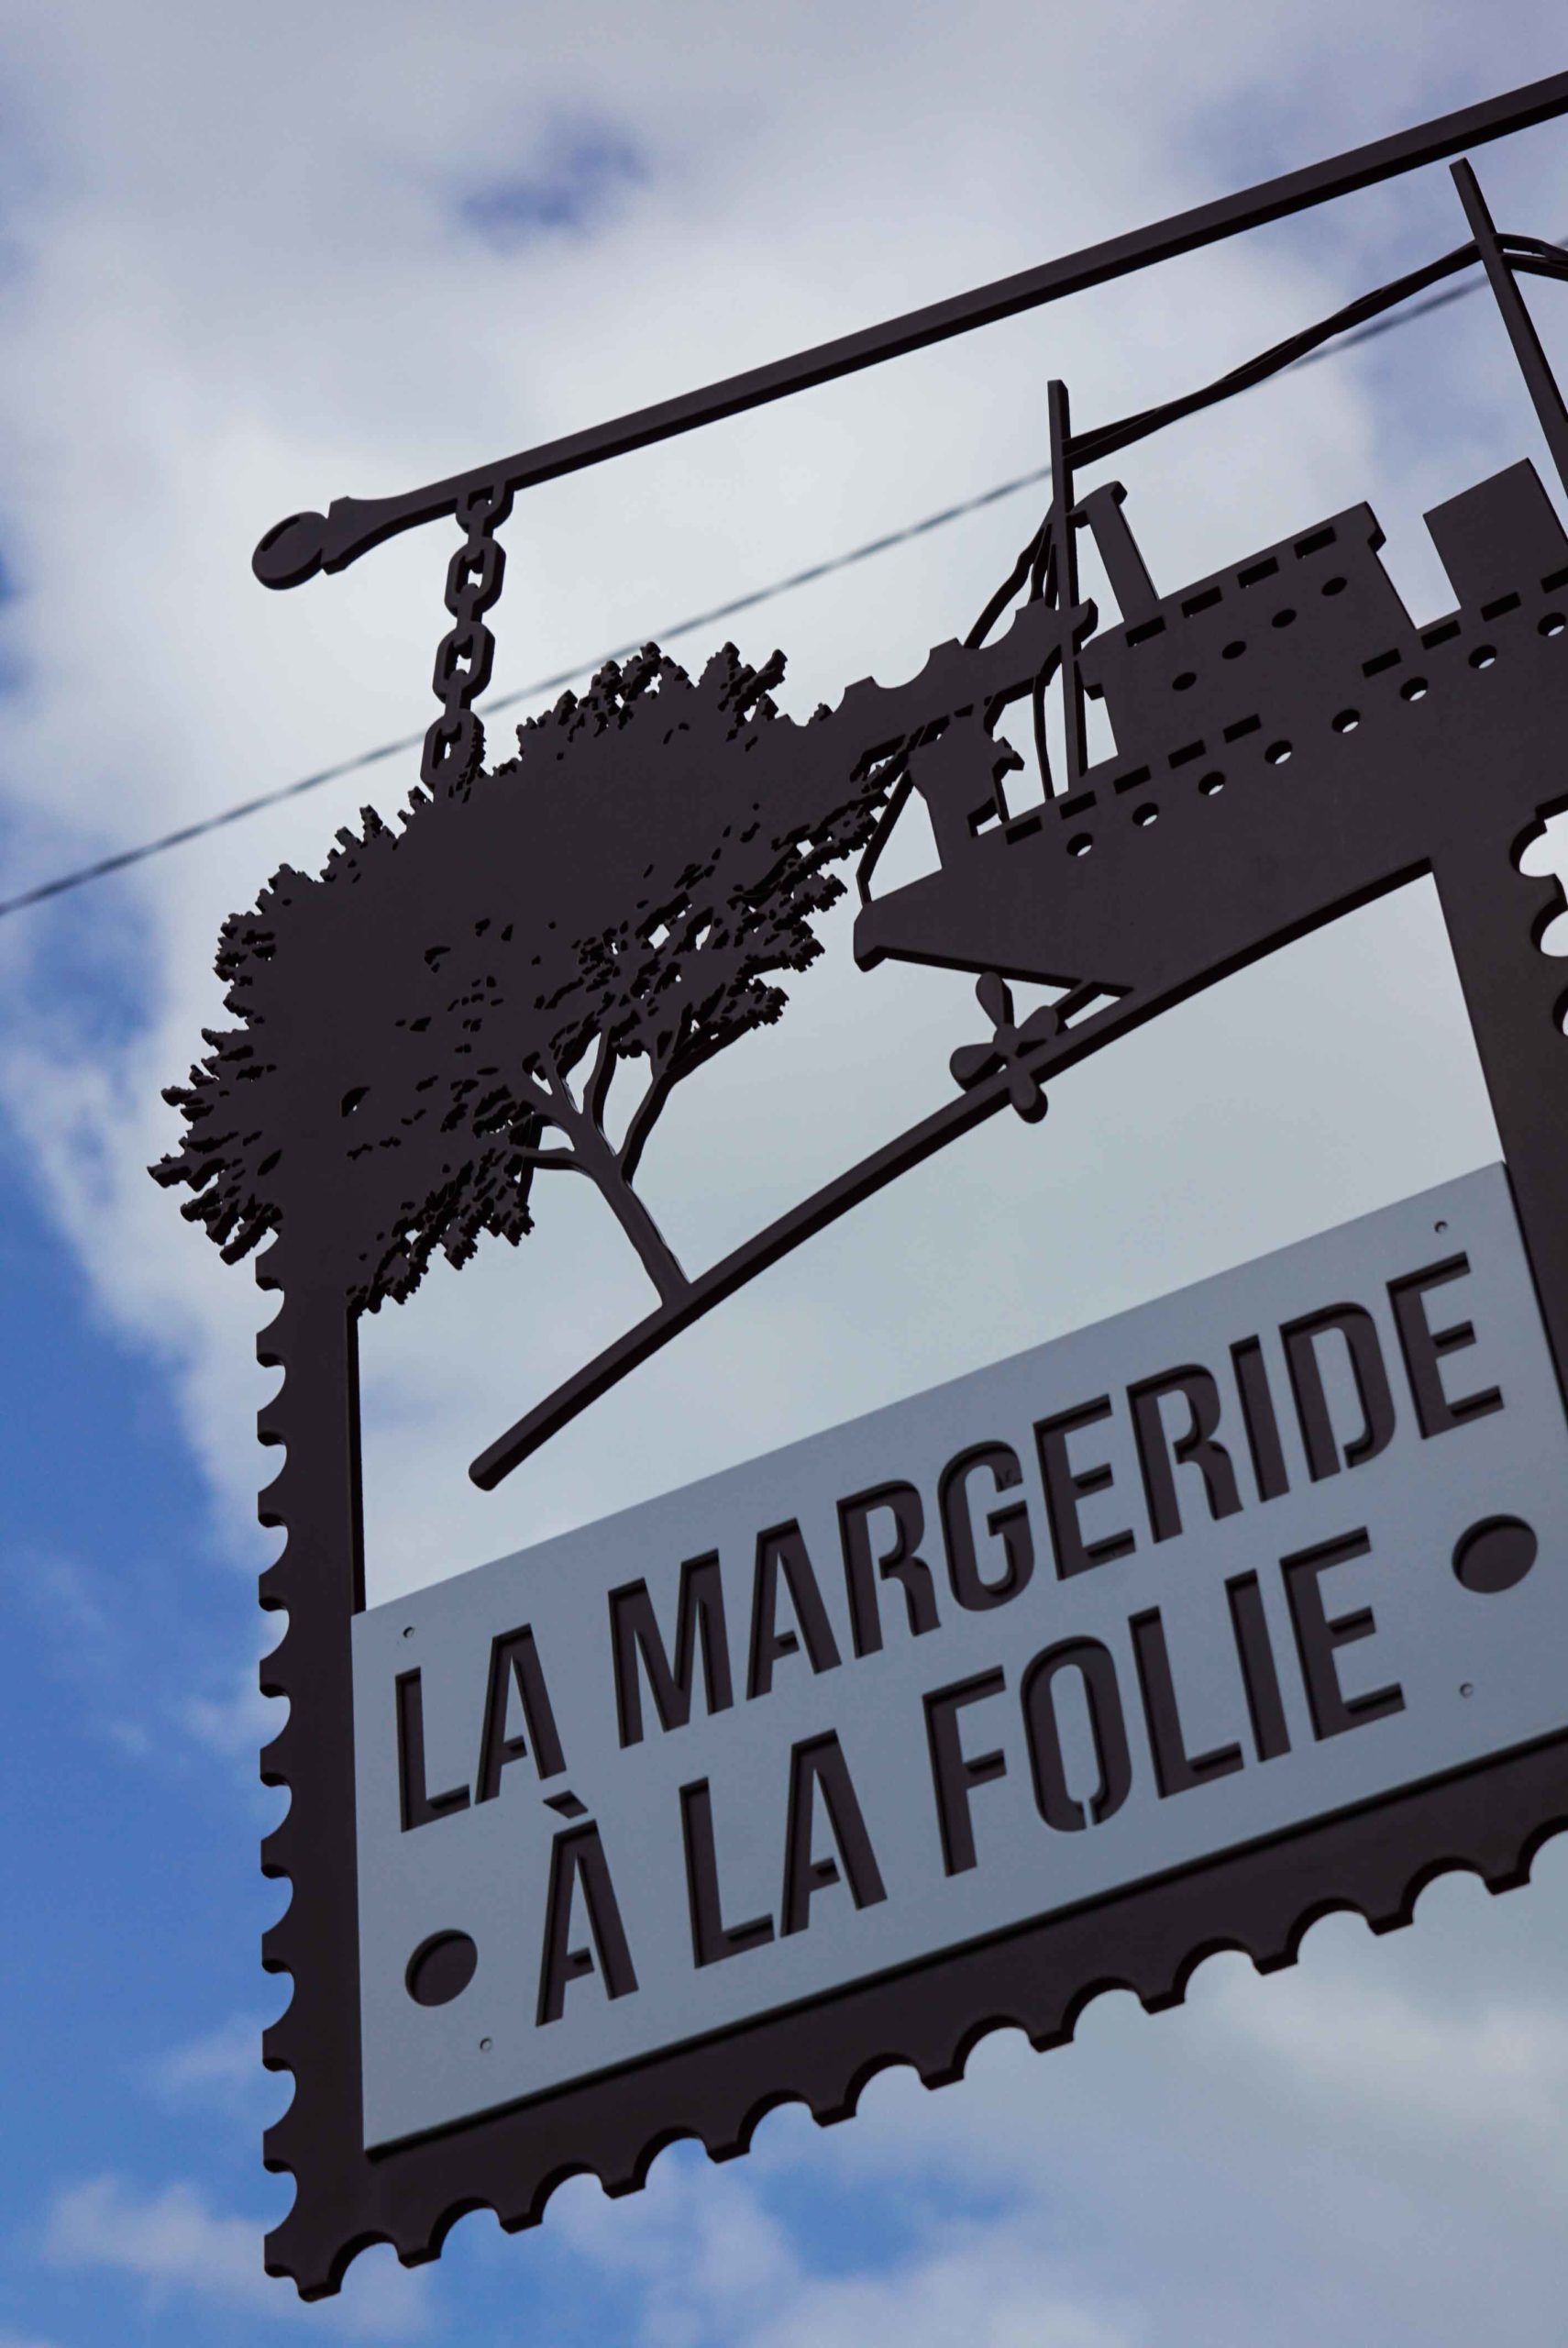 La Margeride à la folie, scénovision de Saint-Alban-sur-Limagnole ©Jean Sébastien Caron